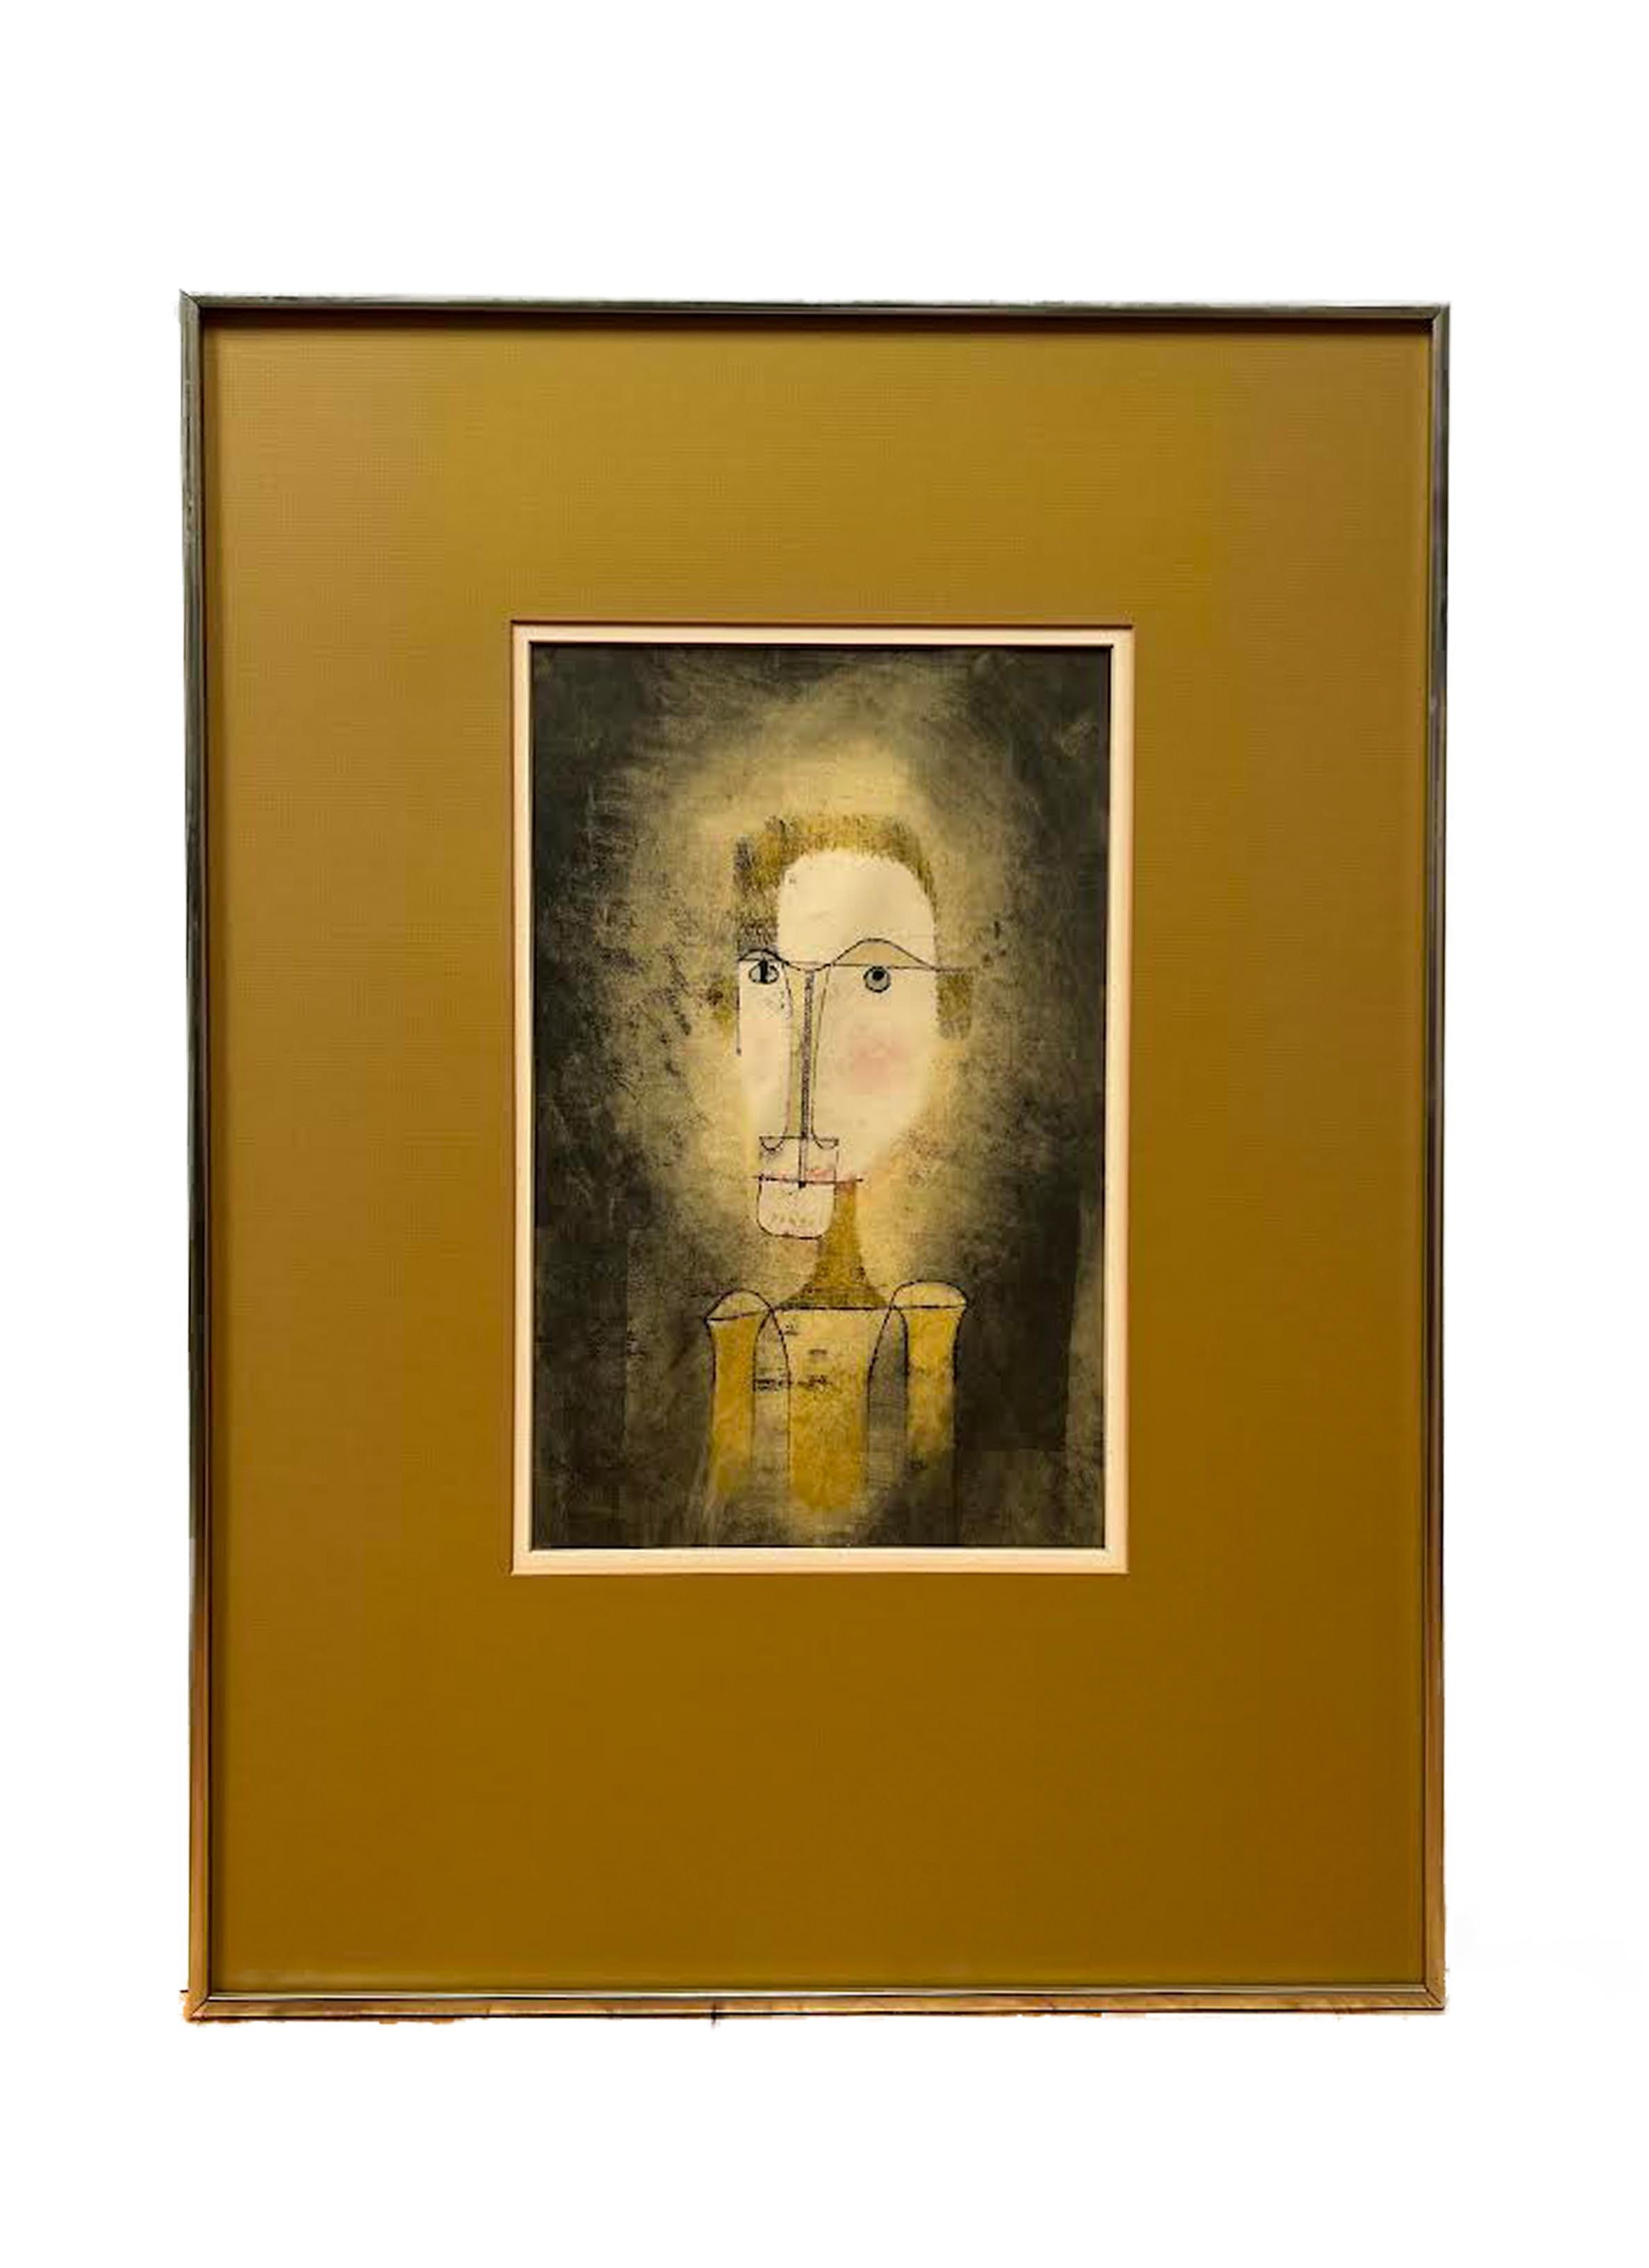 Dieses Plakat wurde 1964 von der Galerie Berggruen in Zusammenarbeit mit Felix Klee, dem Sohn des Künstlers, herausgegeben.  Die dunkelgelbe Matte bedeckt den unteren Teil des Plakats, auf dem die Informationen zu Bergrünen zu sehen sind.

Paul Klee